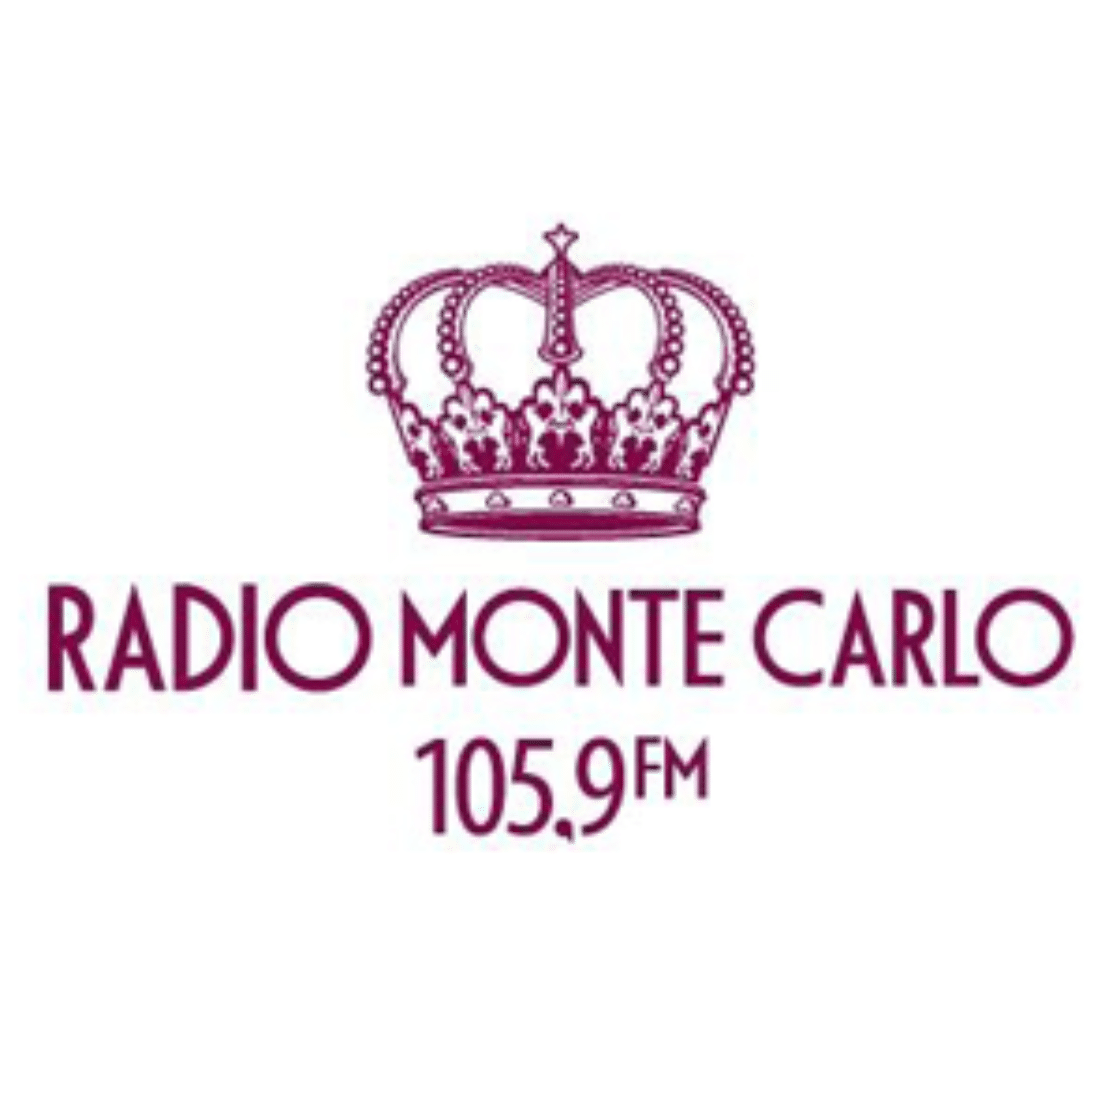 Слушать радио 105.9 фм. Радио Monte Carlo логотип. Значки радио Монте Карло. Monte Carlo 105.9. Радио Монте-Карло Санкт-Петербург.